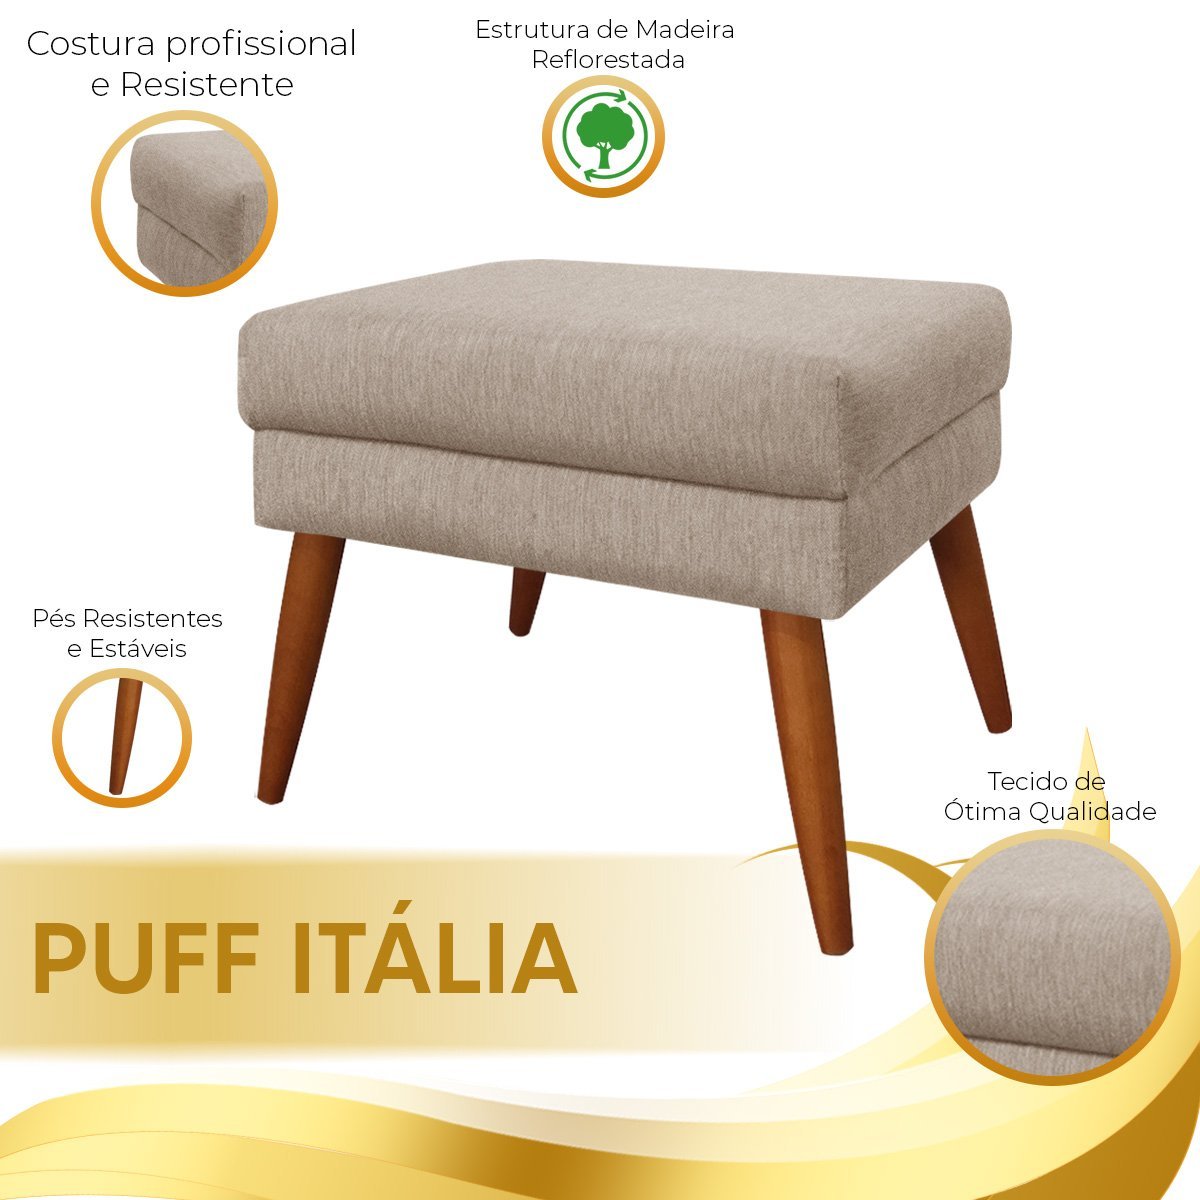 Puff Decorativo Itália Material Linho Capuccino - Star Confort - 6